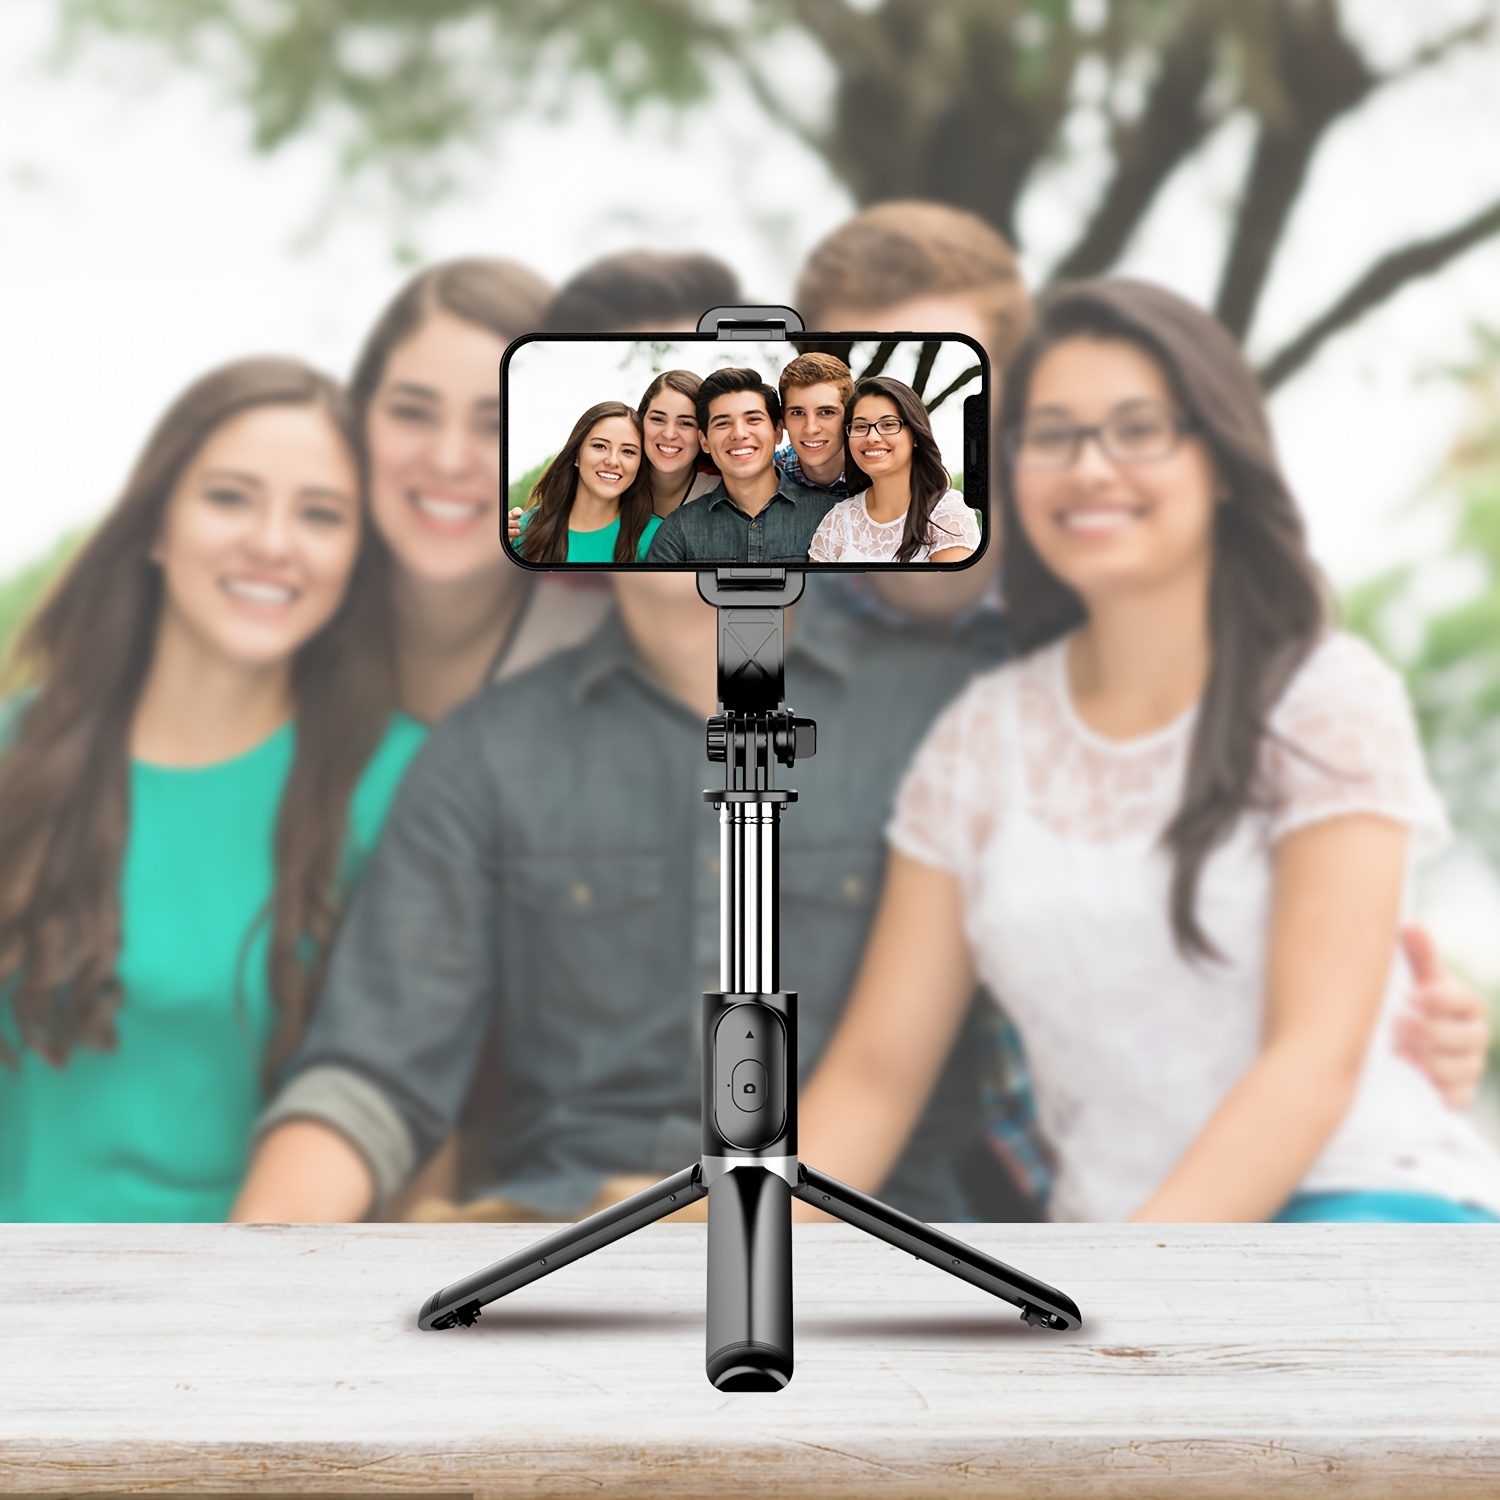 Tripé/selfie stick de 100 cm (40) para telemóvel, selfie stick extensível  tudo em um, tripé para smartphone com telecomando sem fios, rotação a 360°